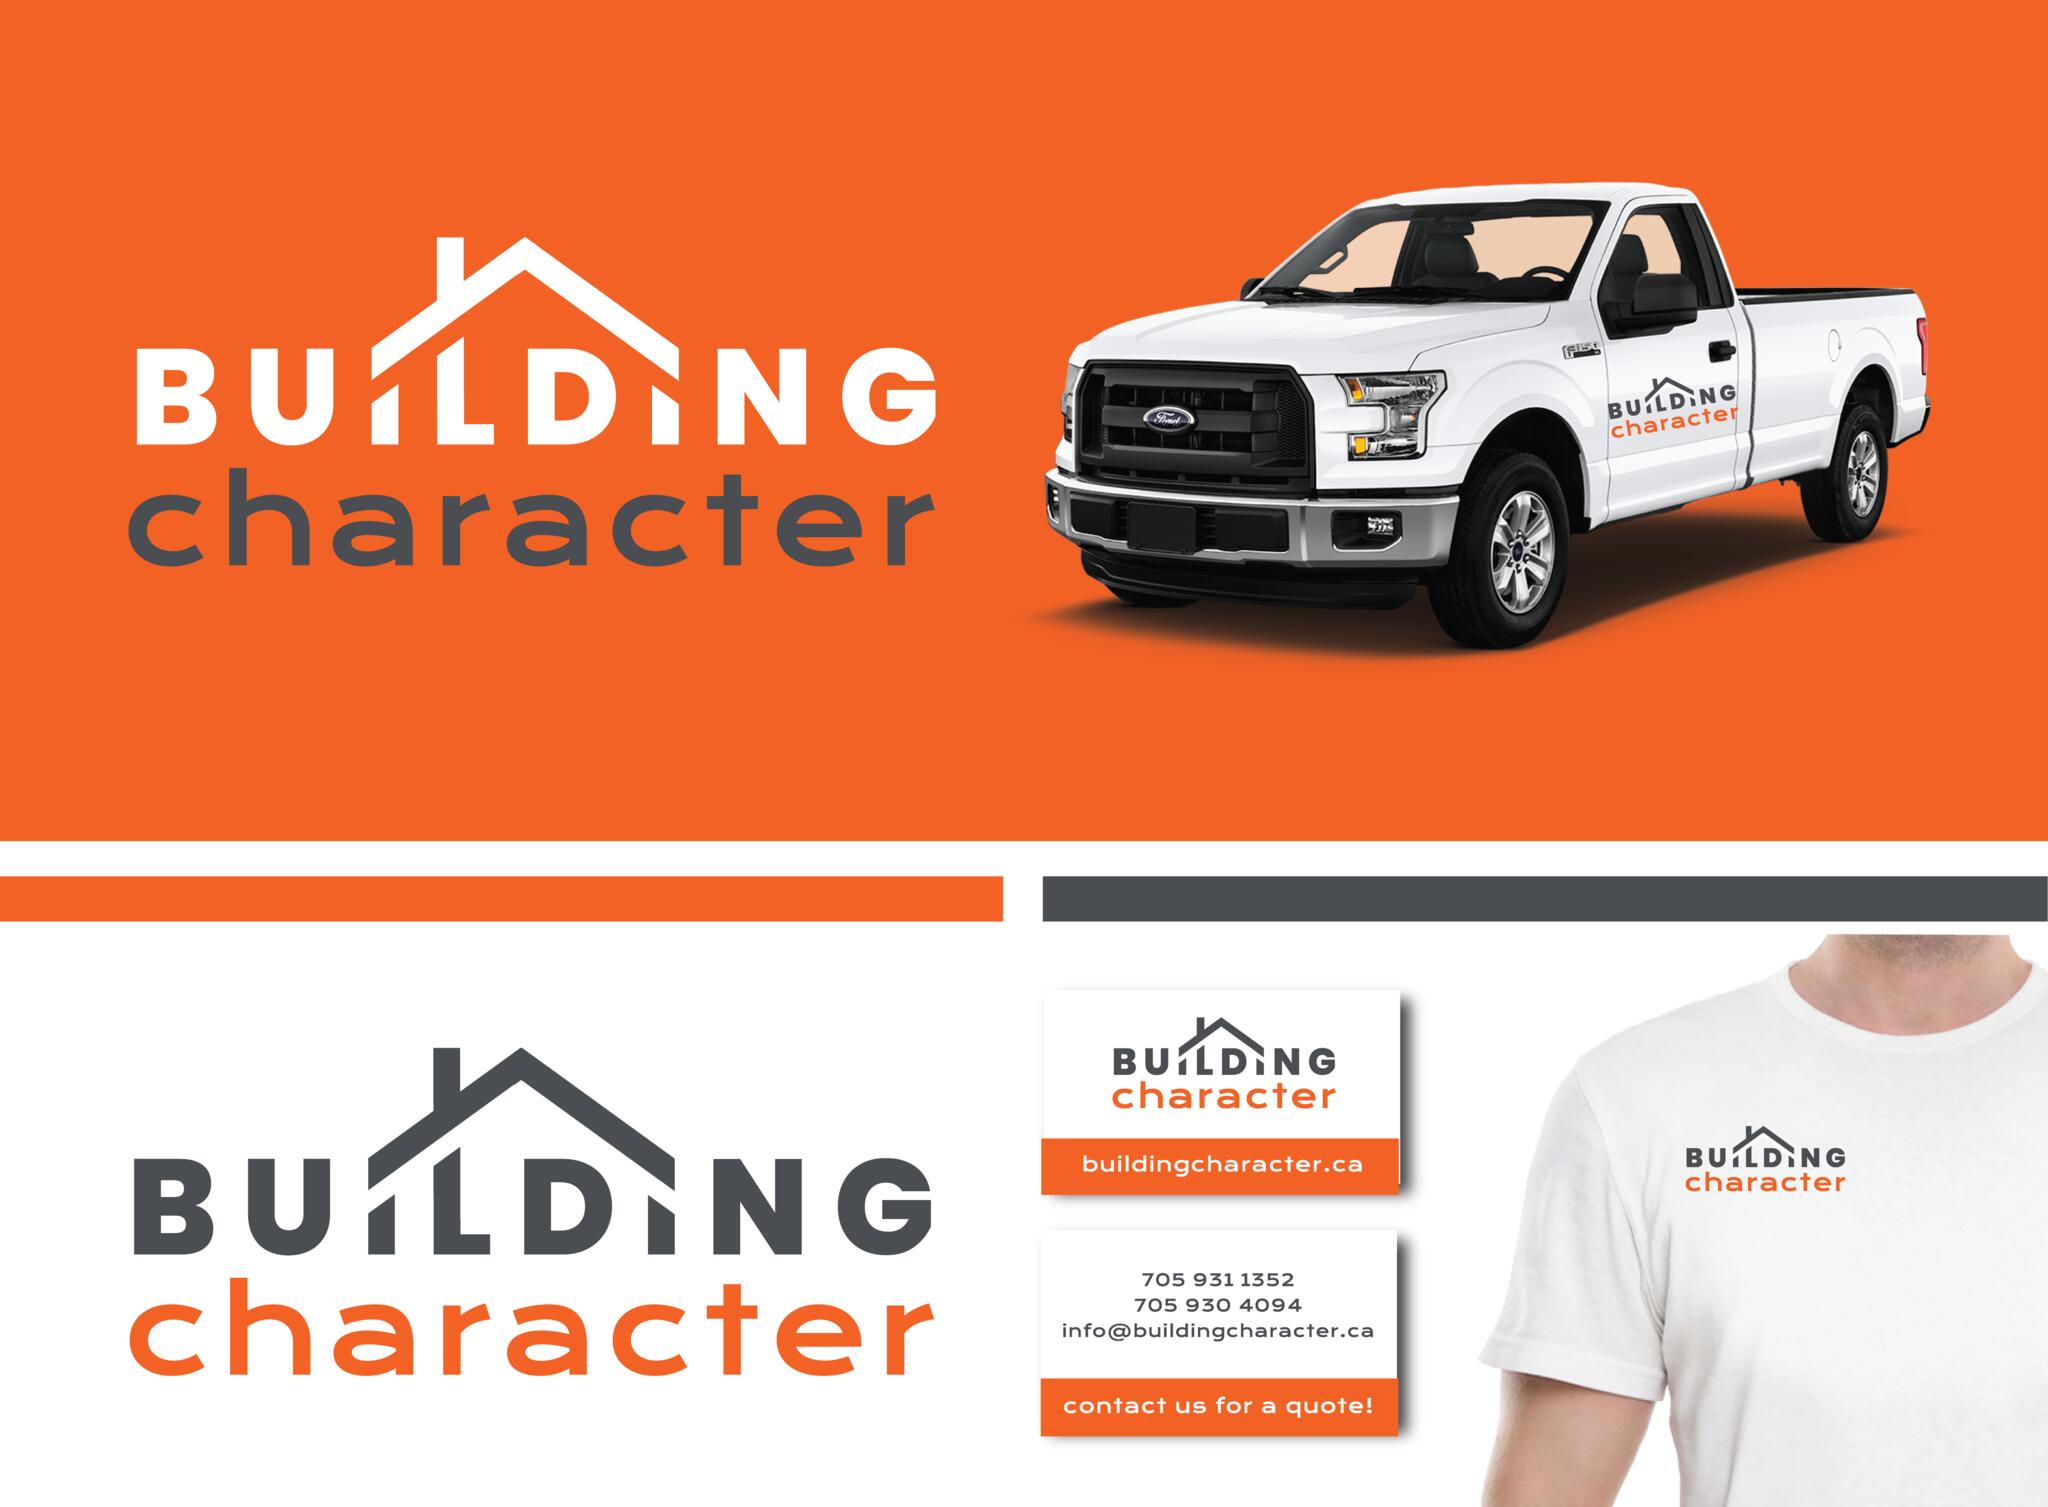 Building Character branding